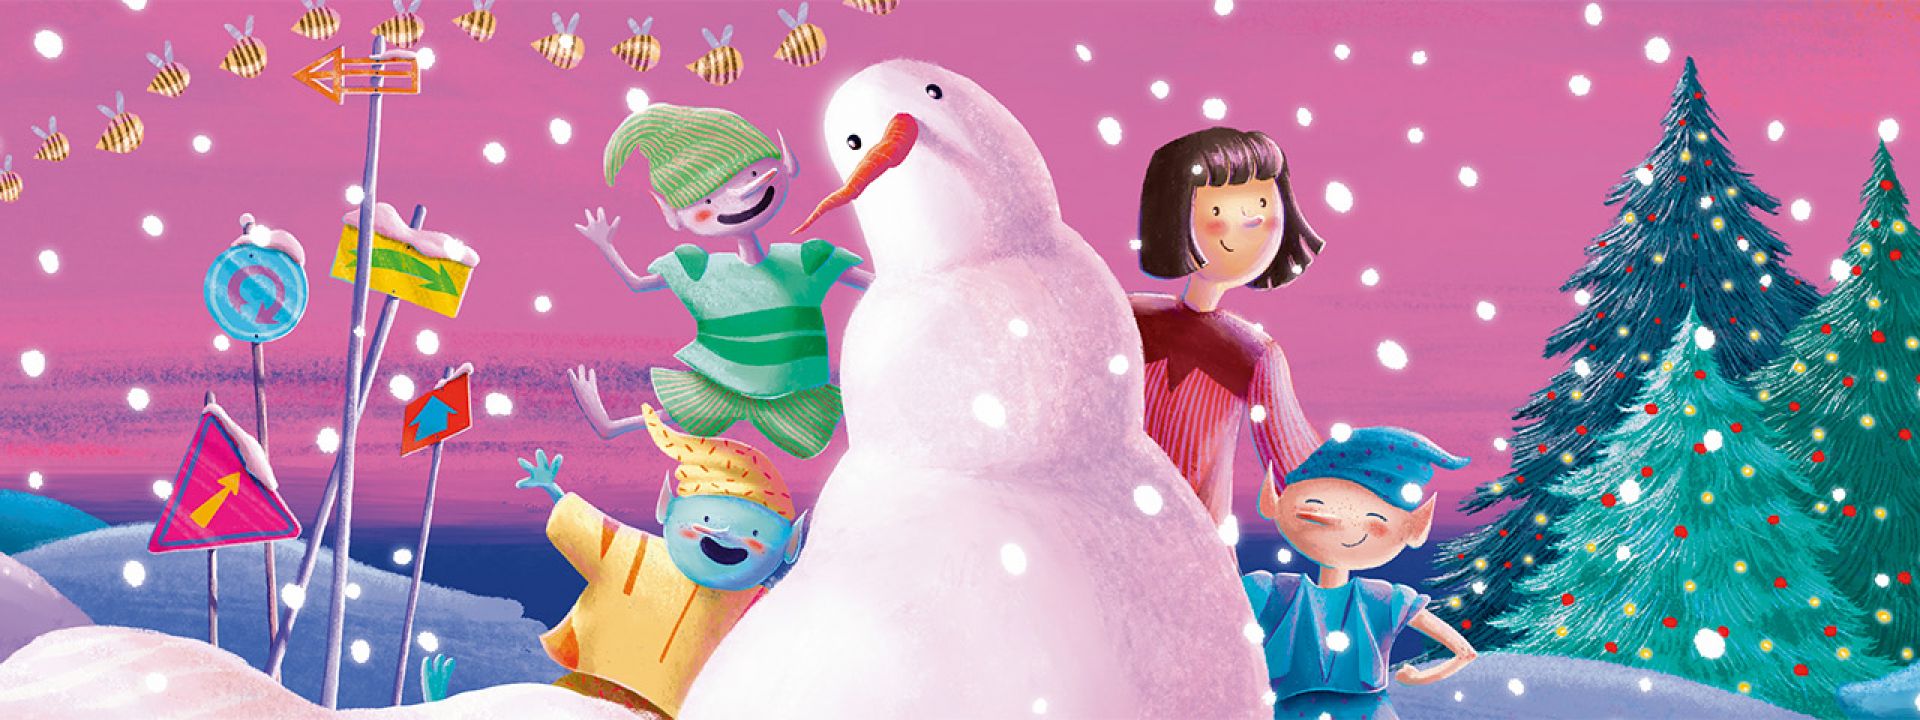 Χριστουγεννιάτικες Ιστορίες στον Φάρο: Πέφτει χιόνι και είναι ροζ - Εικόνα